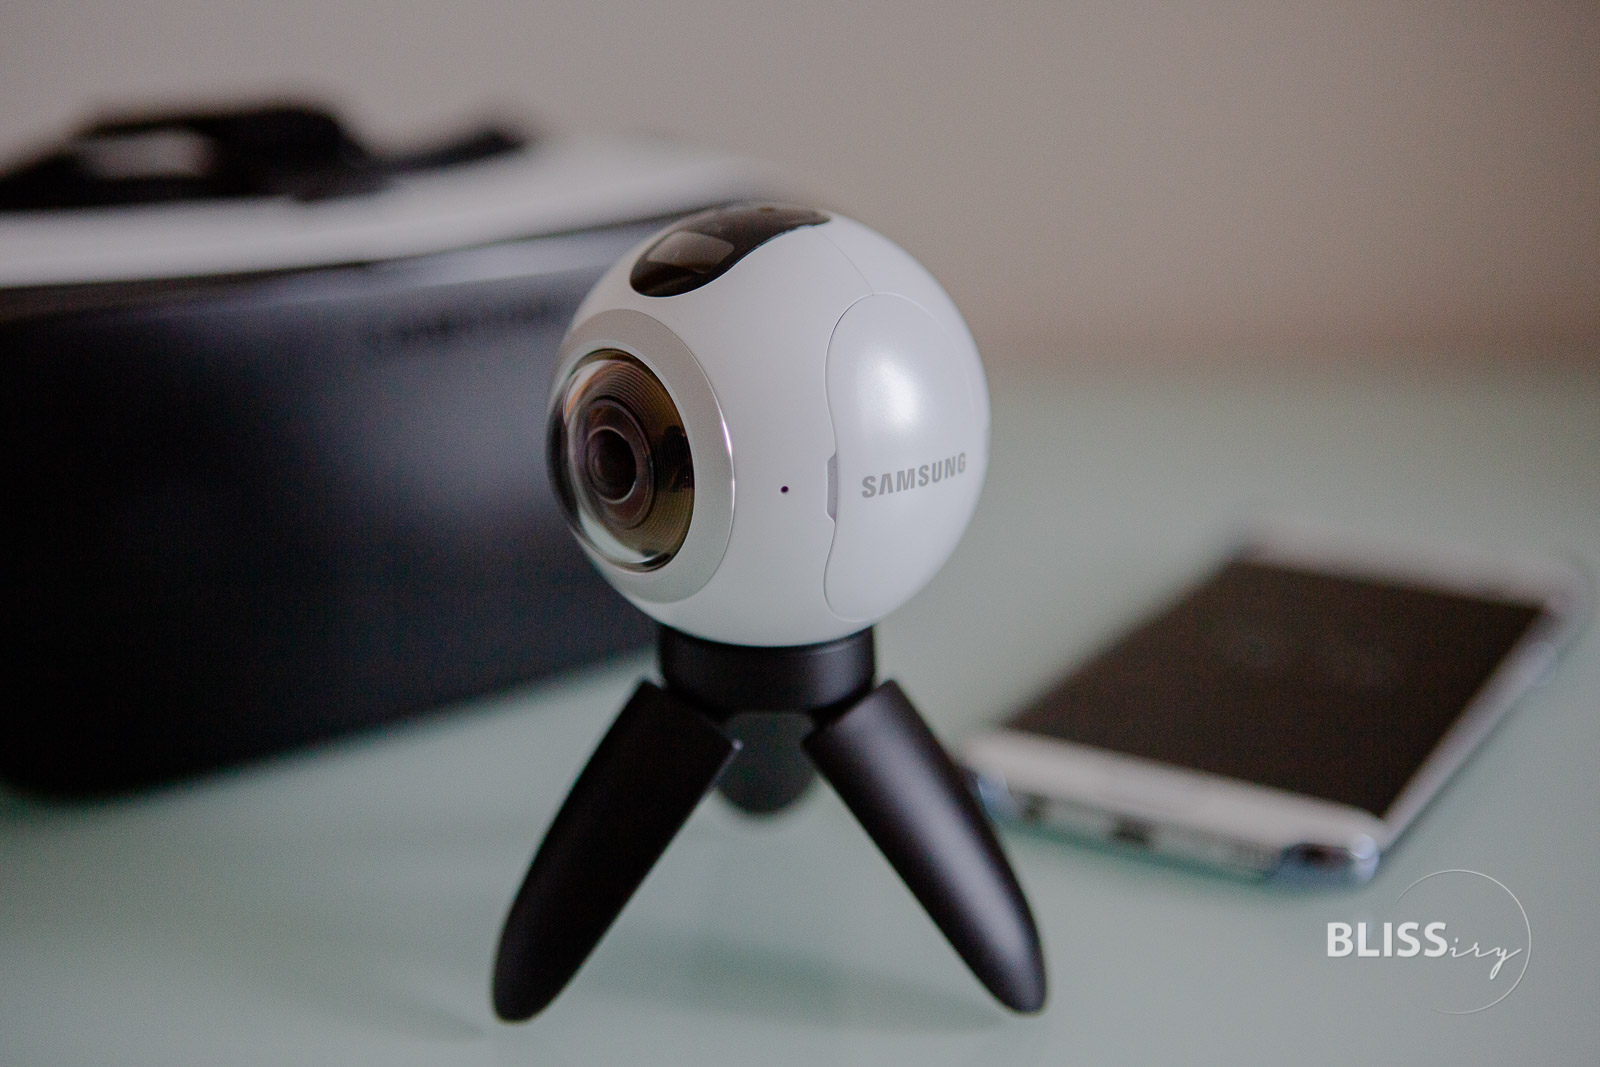 Samsung Gear360 Kamera - Virtual Reality für Luxus-Hotels und Luxus-Reiseblogger - Panorama-Aufnahmen erstellen und 360-Grad-Live-Videos - SAMSUNG-VR Brille und Samsung Galaxy S7edge - weiss - Deutscher Reiseblog